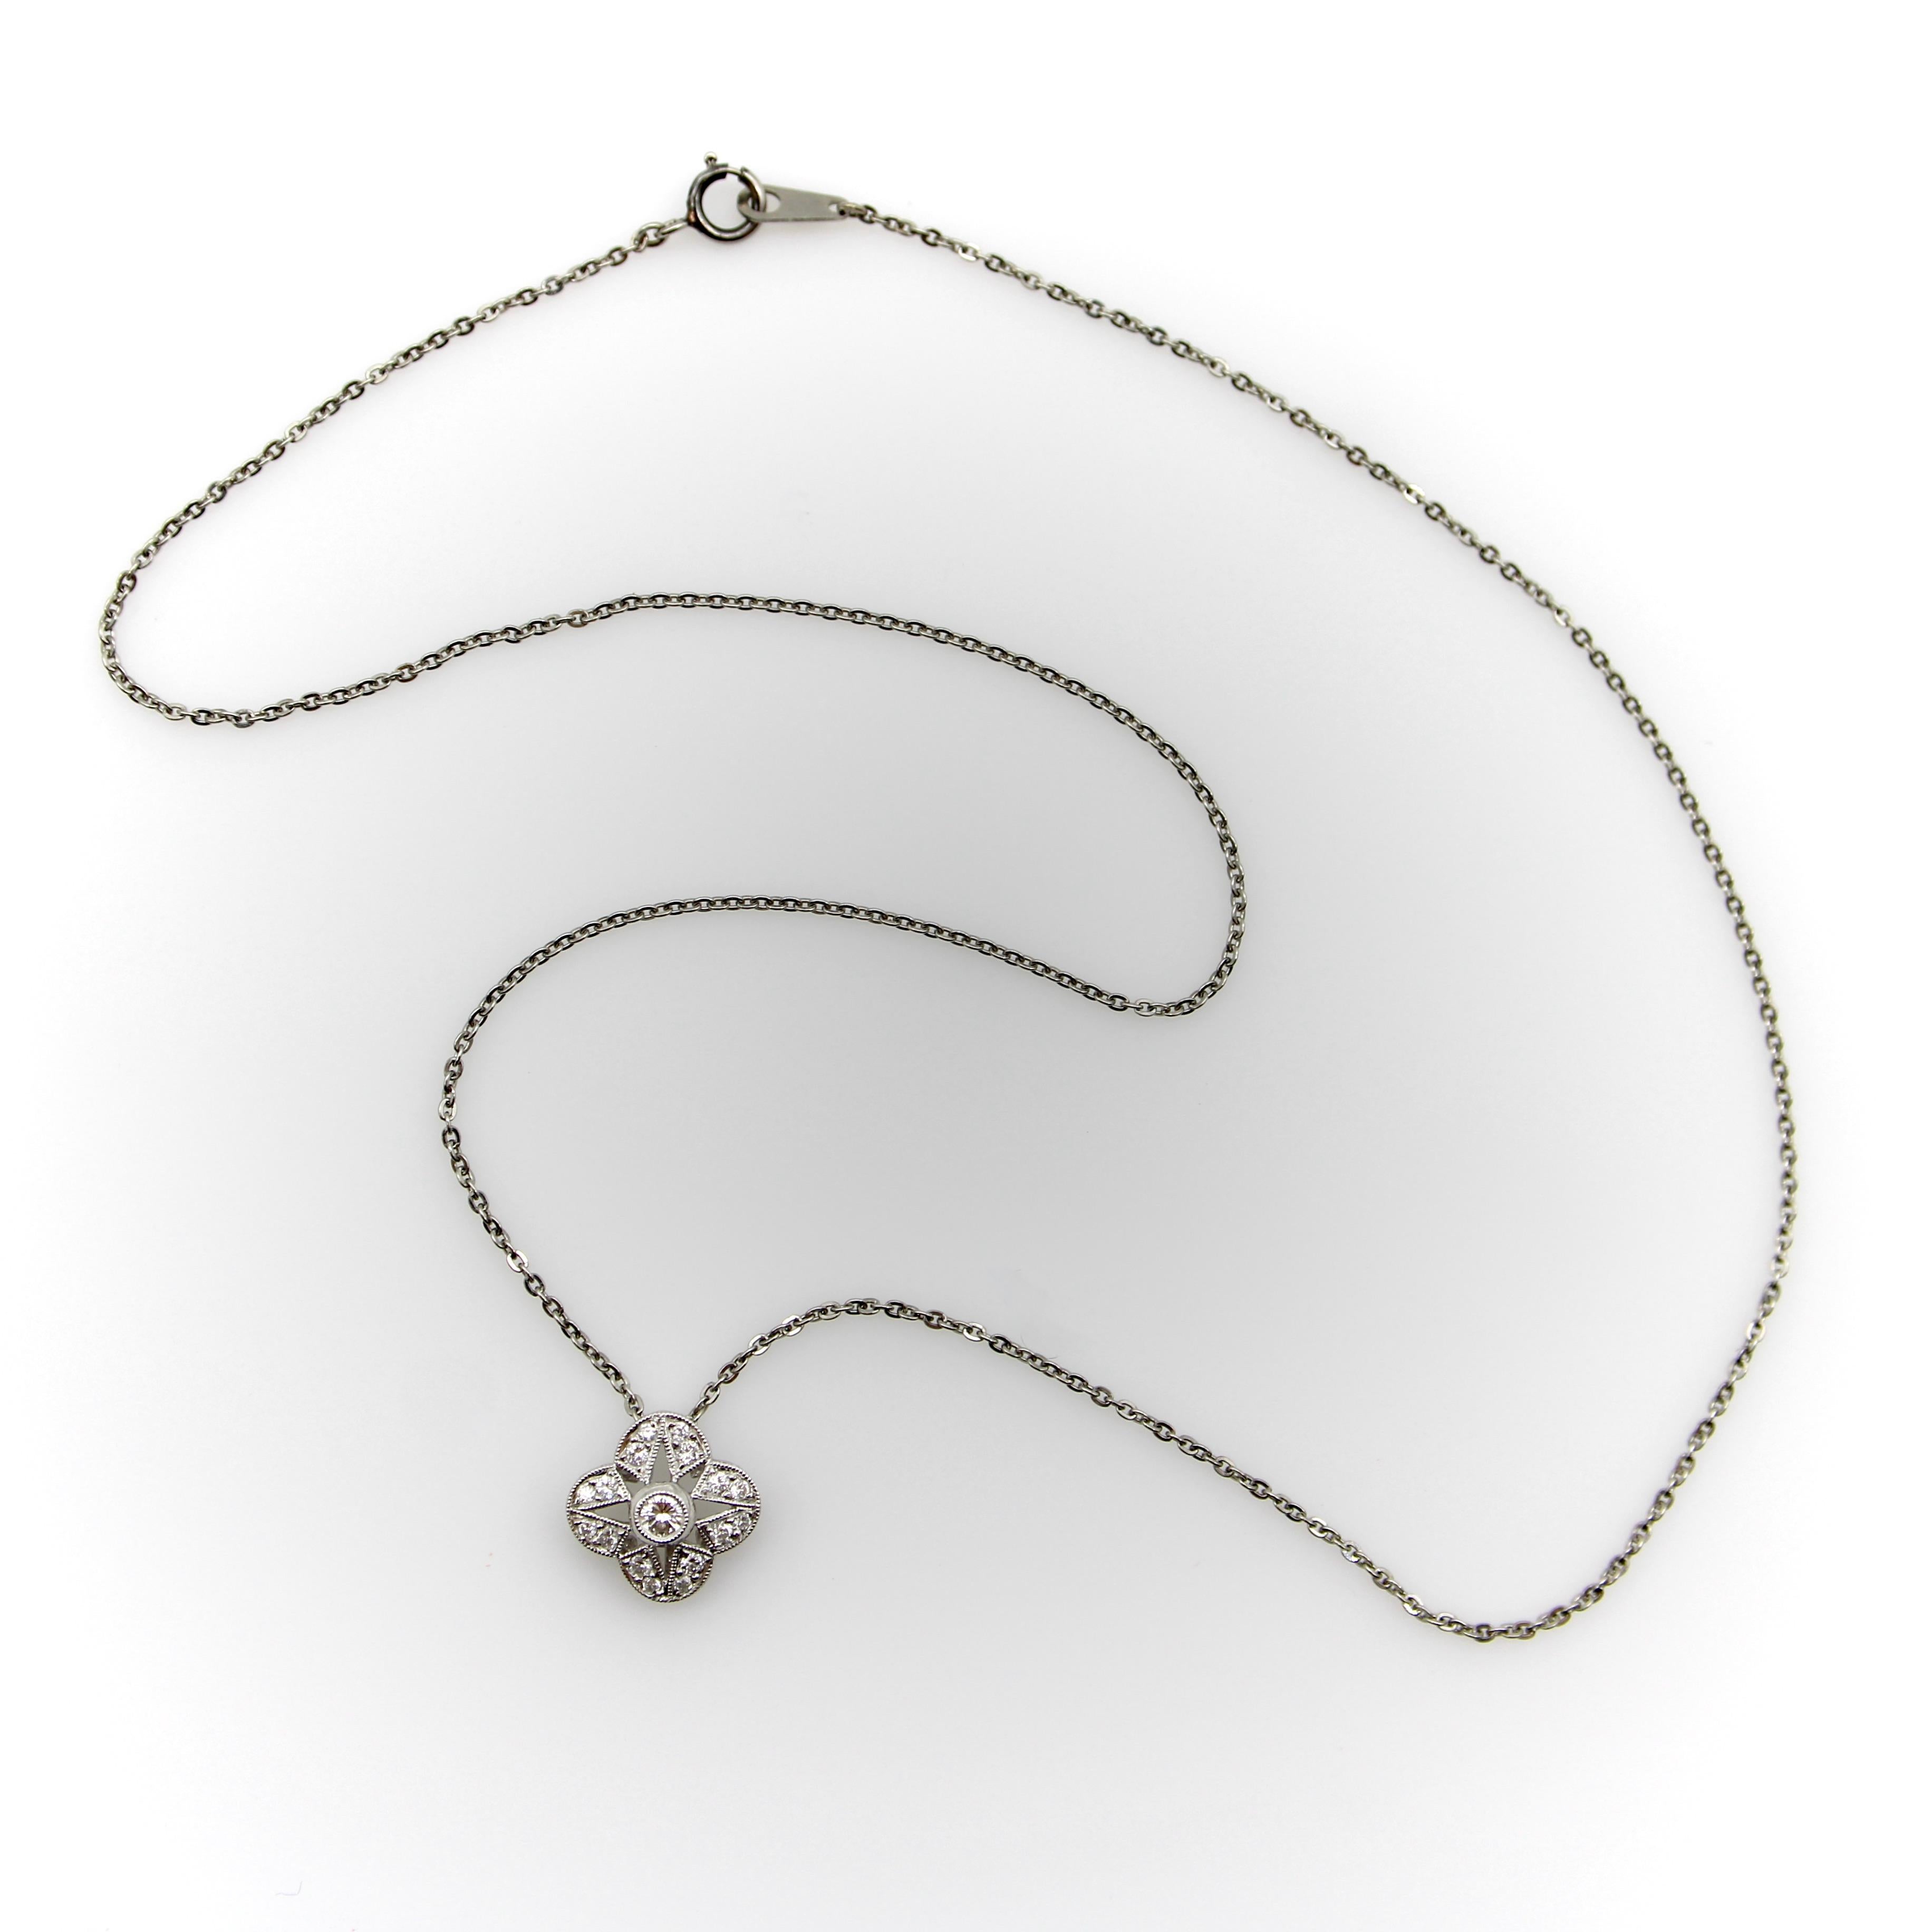 Ce magnifique collier en platine présente un pendentif en forme de quadrilobe rempli de diamants étincelants. Un diamant rond et brillant orne le centre du pédant, tandis que seize diamants plus petits sont sertis en chaton sur la surface